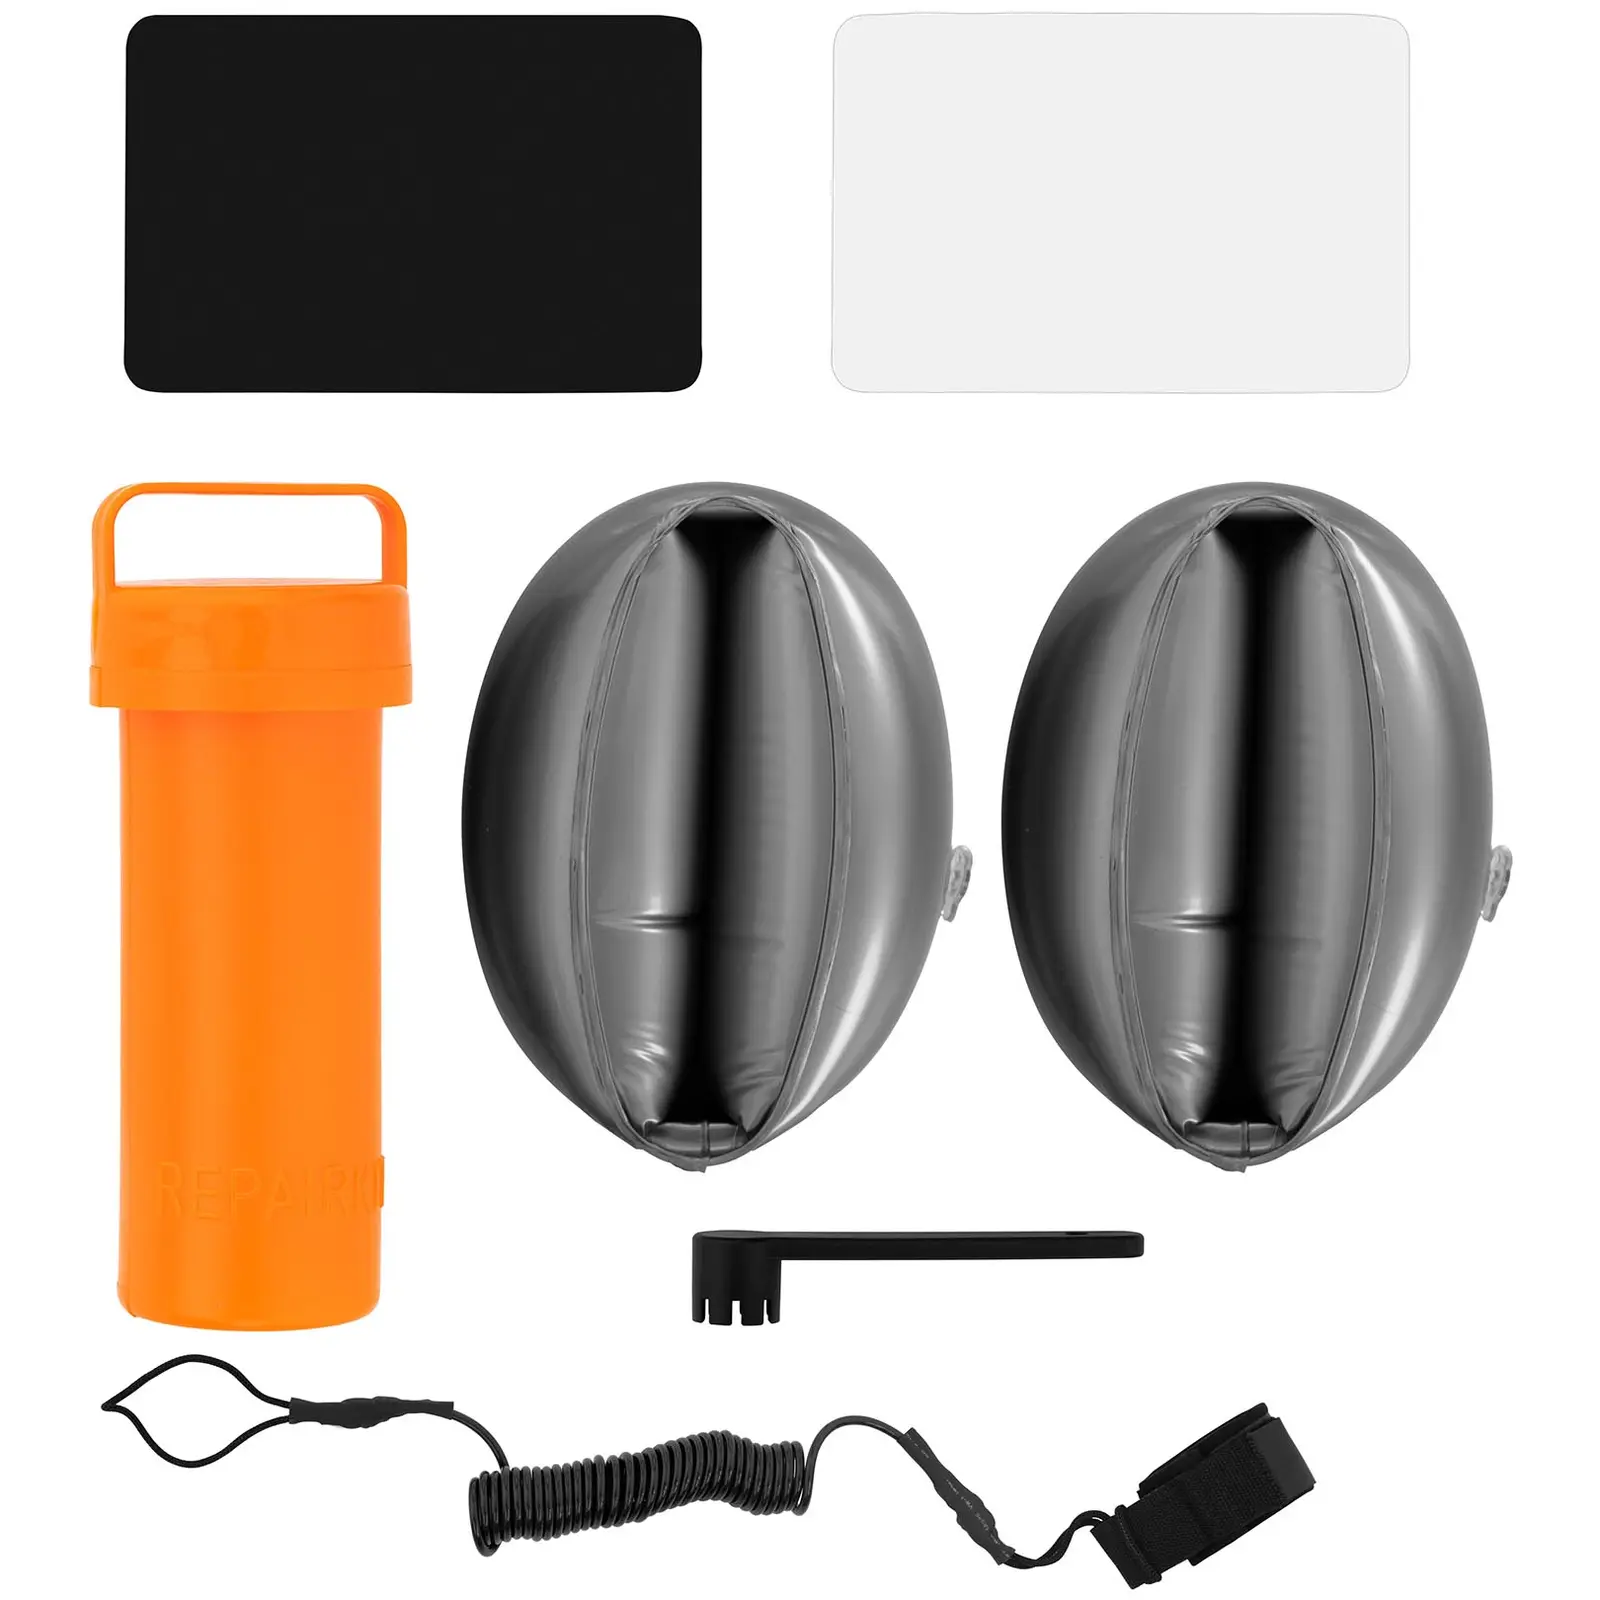 Stand up paddle gonflable - 120 kg - Noir/jaune - Kit incluant pagaie, siège et accessoires - 7